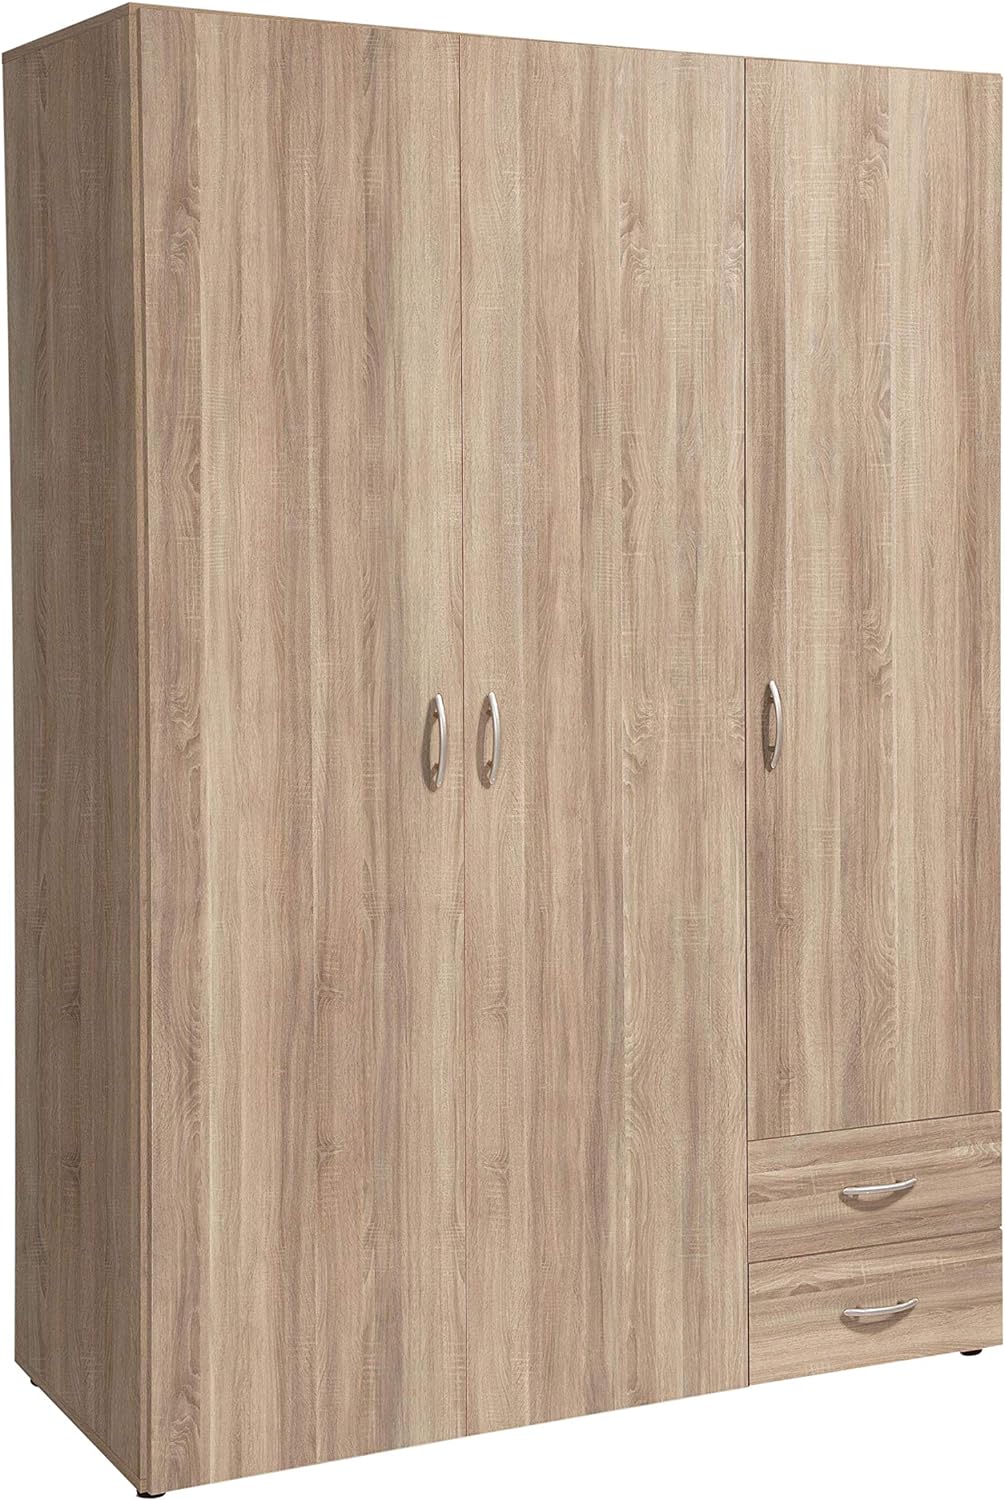 armadio moderno per camera da letto 3 ante battenti in legno marrone cameretta T2651,140S